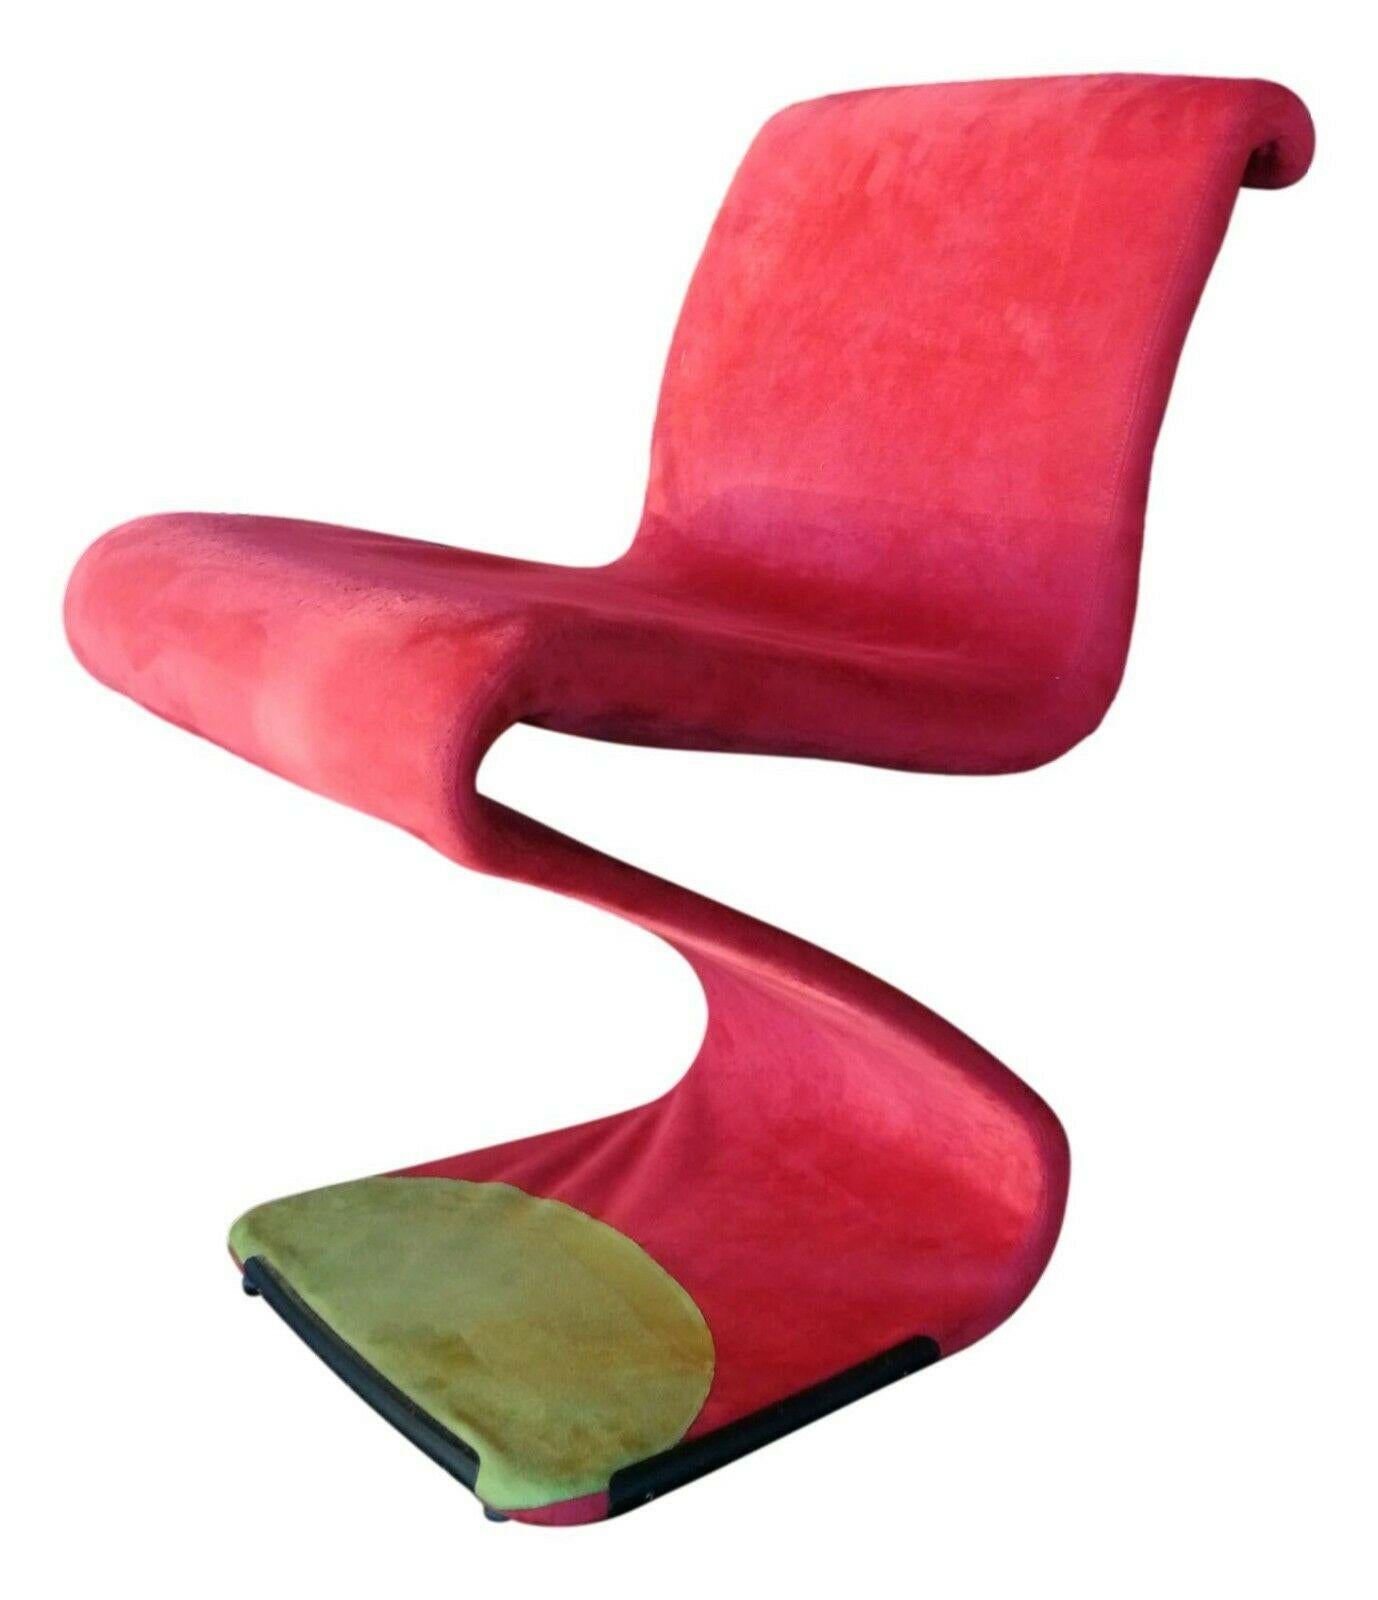 Rare chair designed by Gastone Rinaldi, 